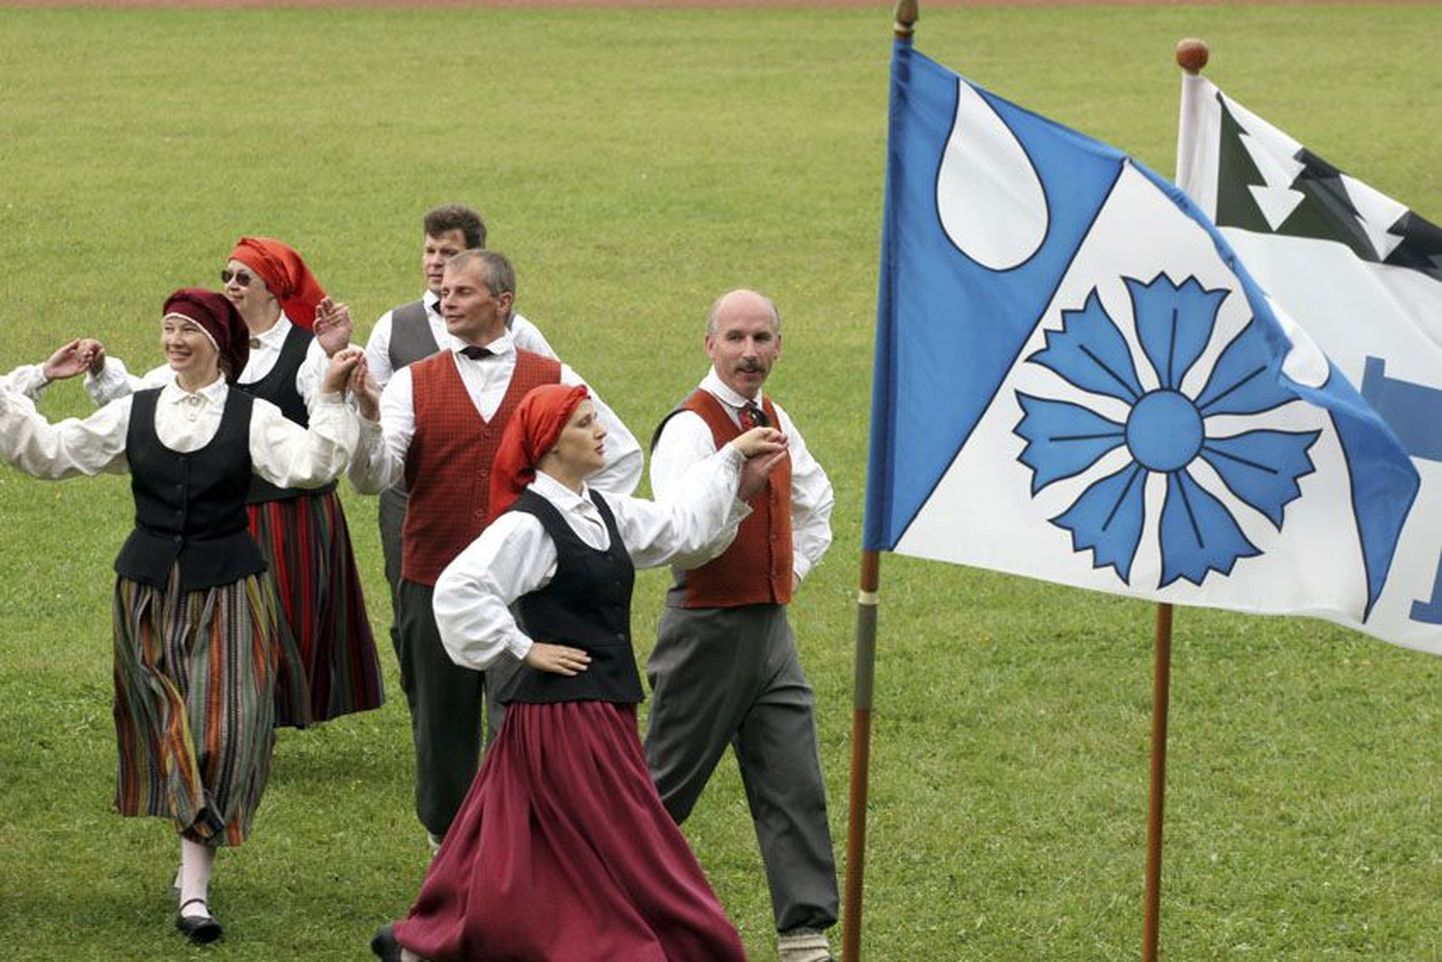 Läti sõprusvalla Berenzi segatantsurühm pakkus Vabadusristi päeval esinedes kultuurilist külakosti.